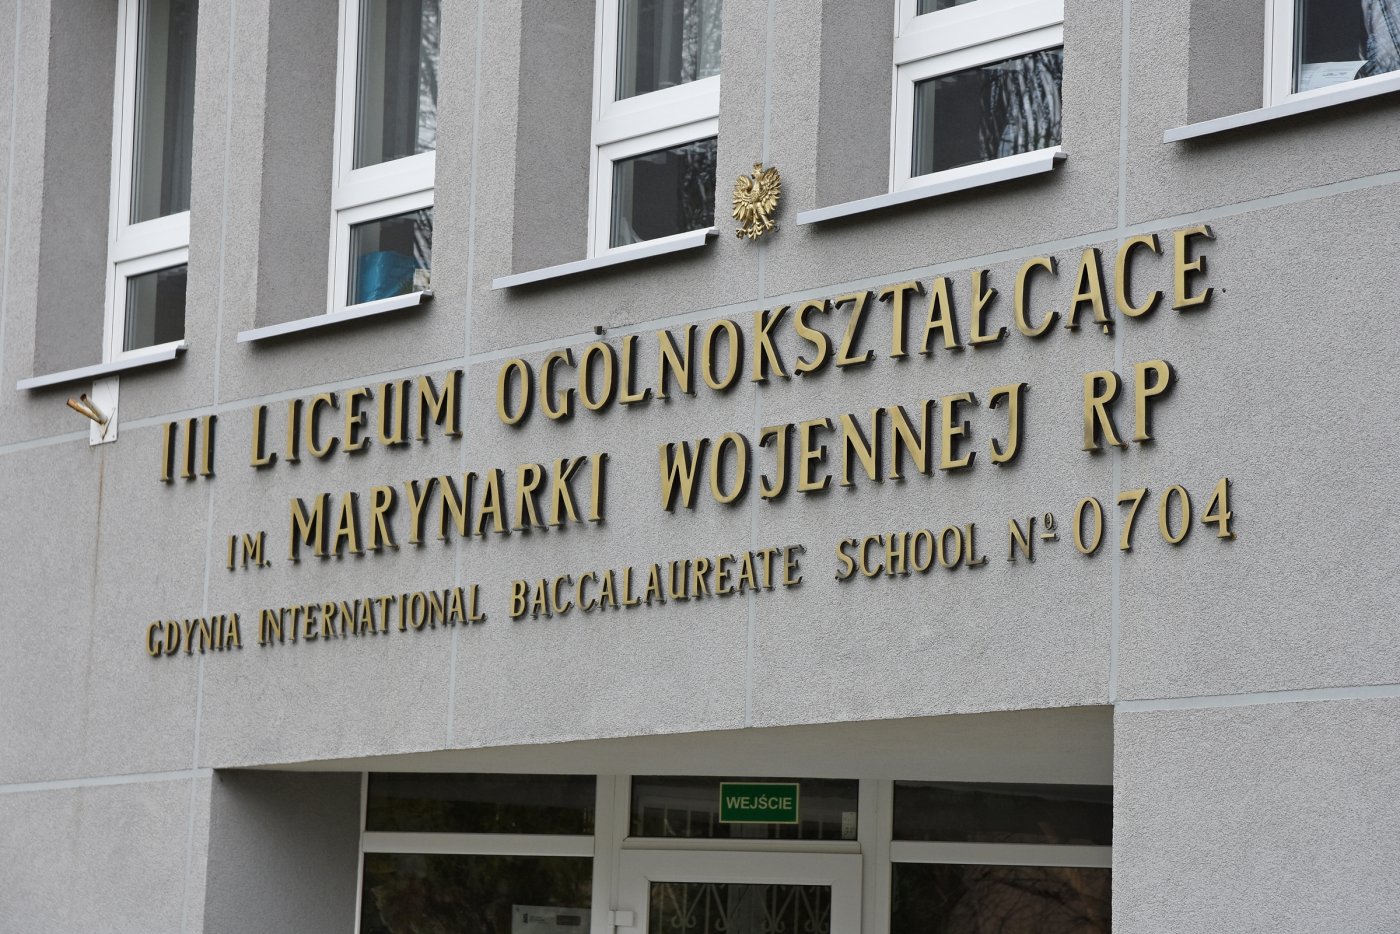 Budynek III Liceum Ogólnokształcącego w Gdyni, fot. Michał Kowalski